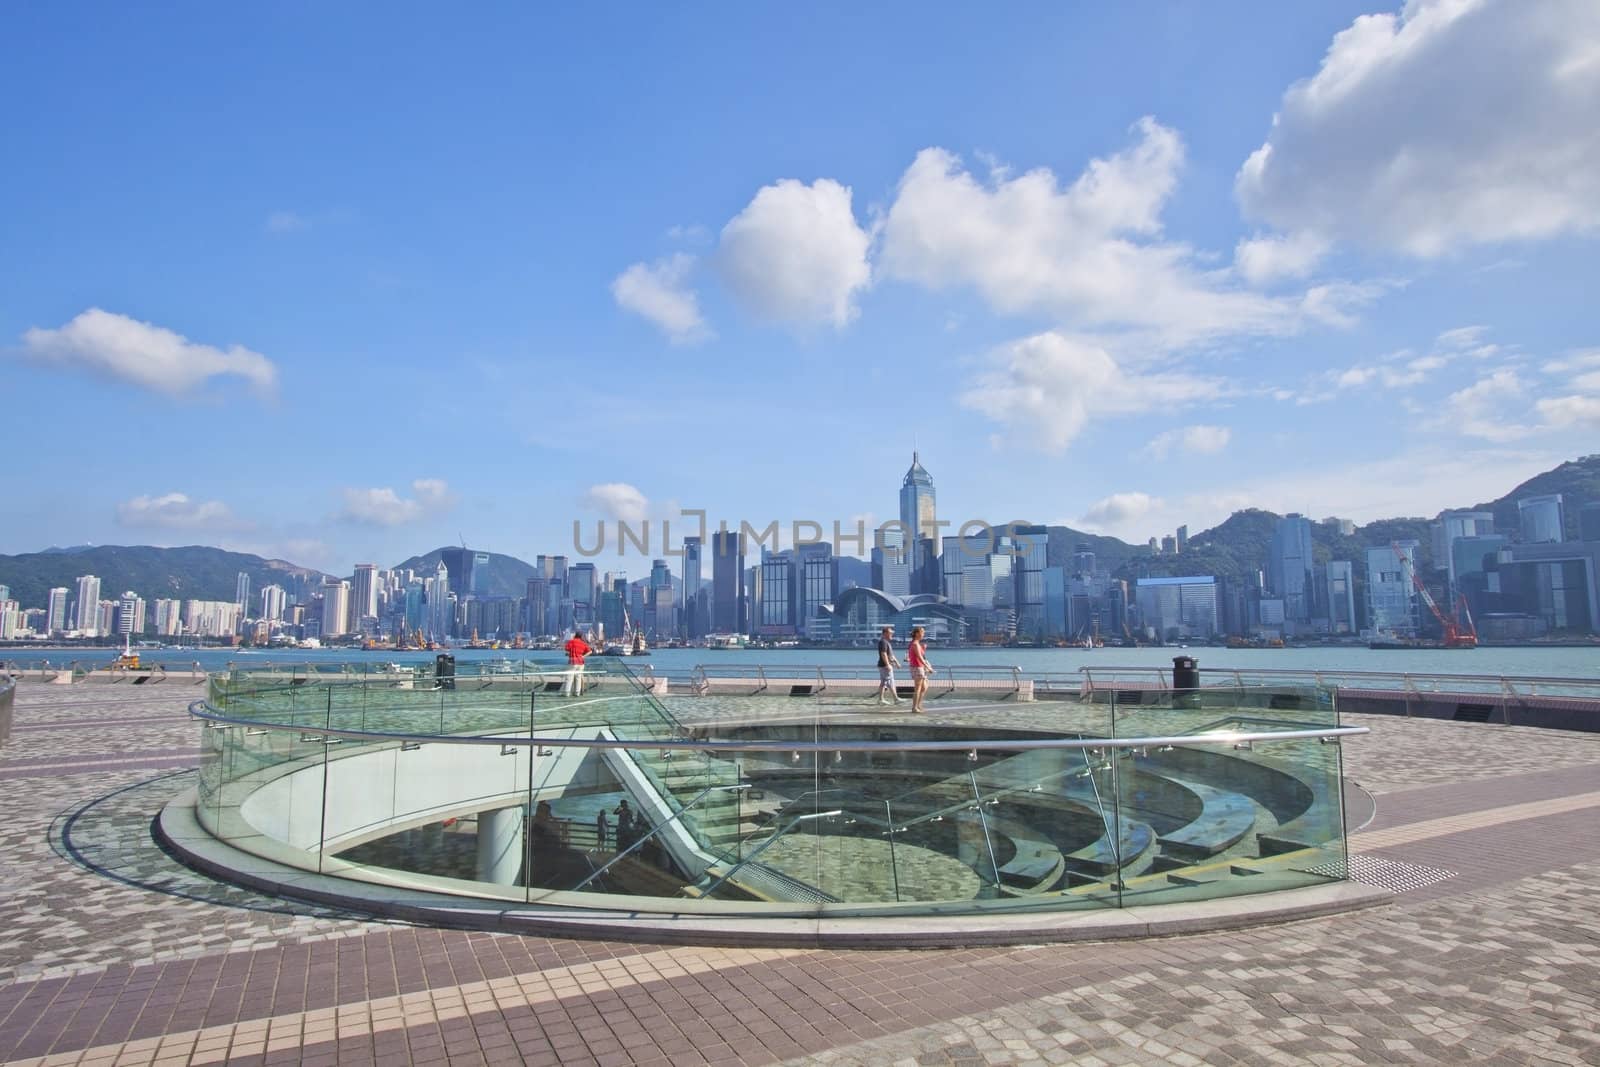 Hong Kong skyline at day time along waterfront by kawing921